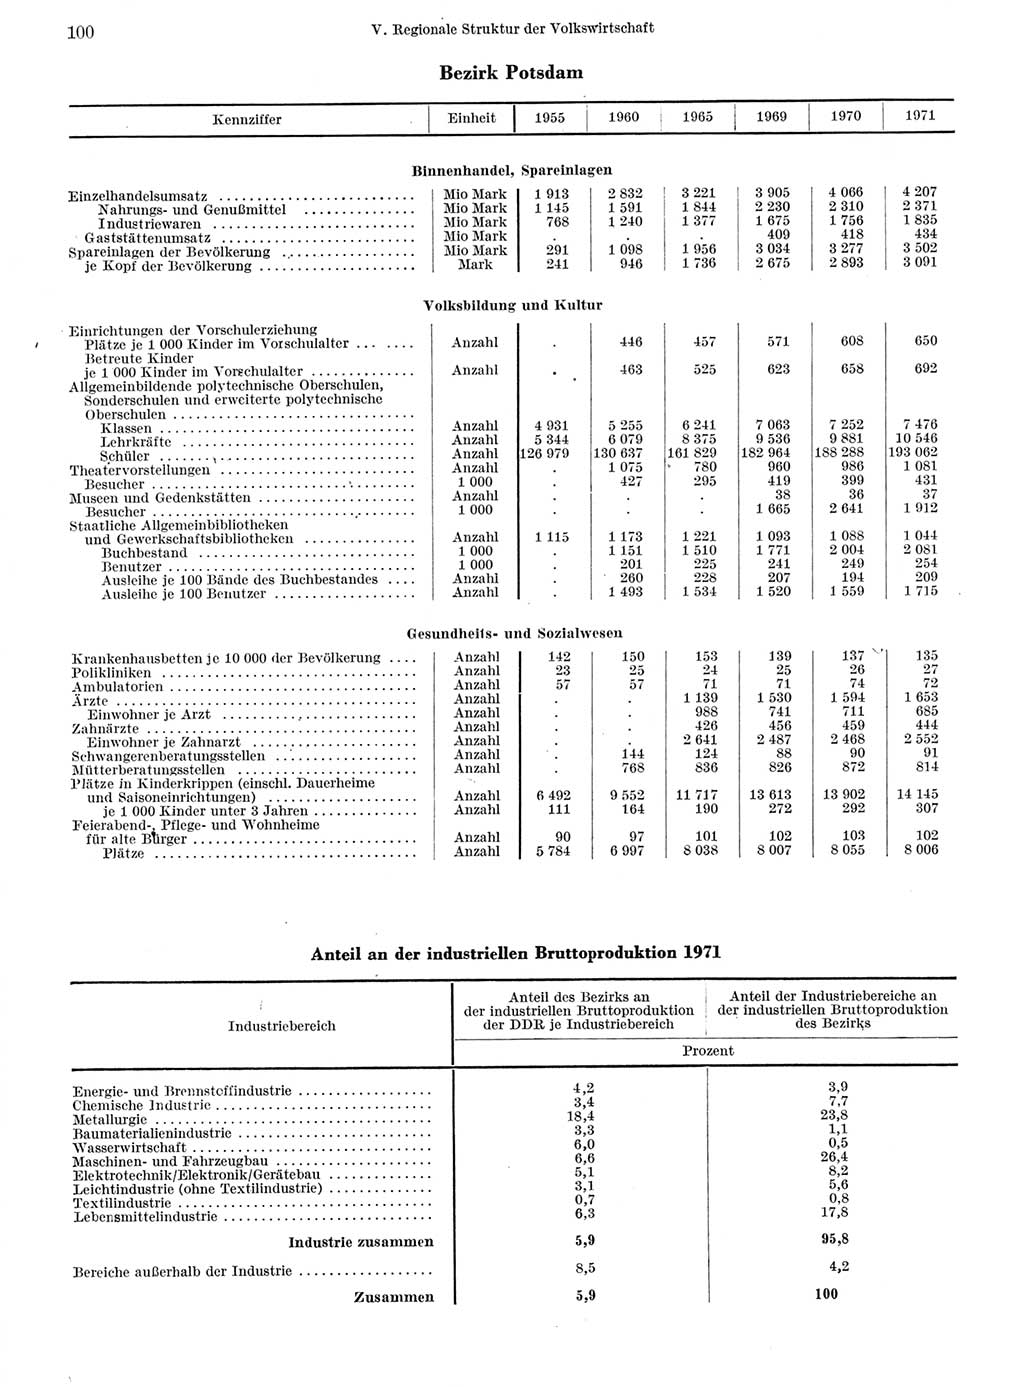 Statistisches Jahrbuch der Deutschen Demokratischen Republik (DDR) 1972, Seite 100 (Stat. Jb. DDR 1972, S. 100)